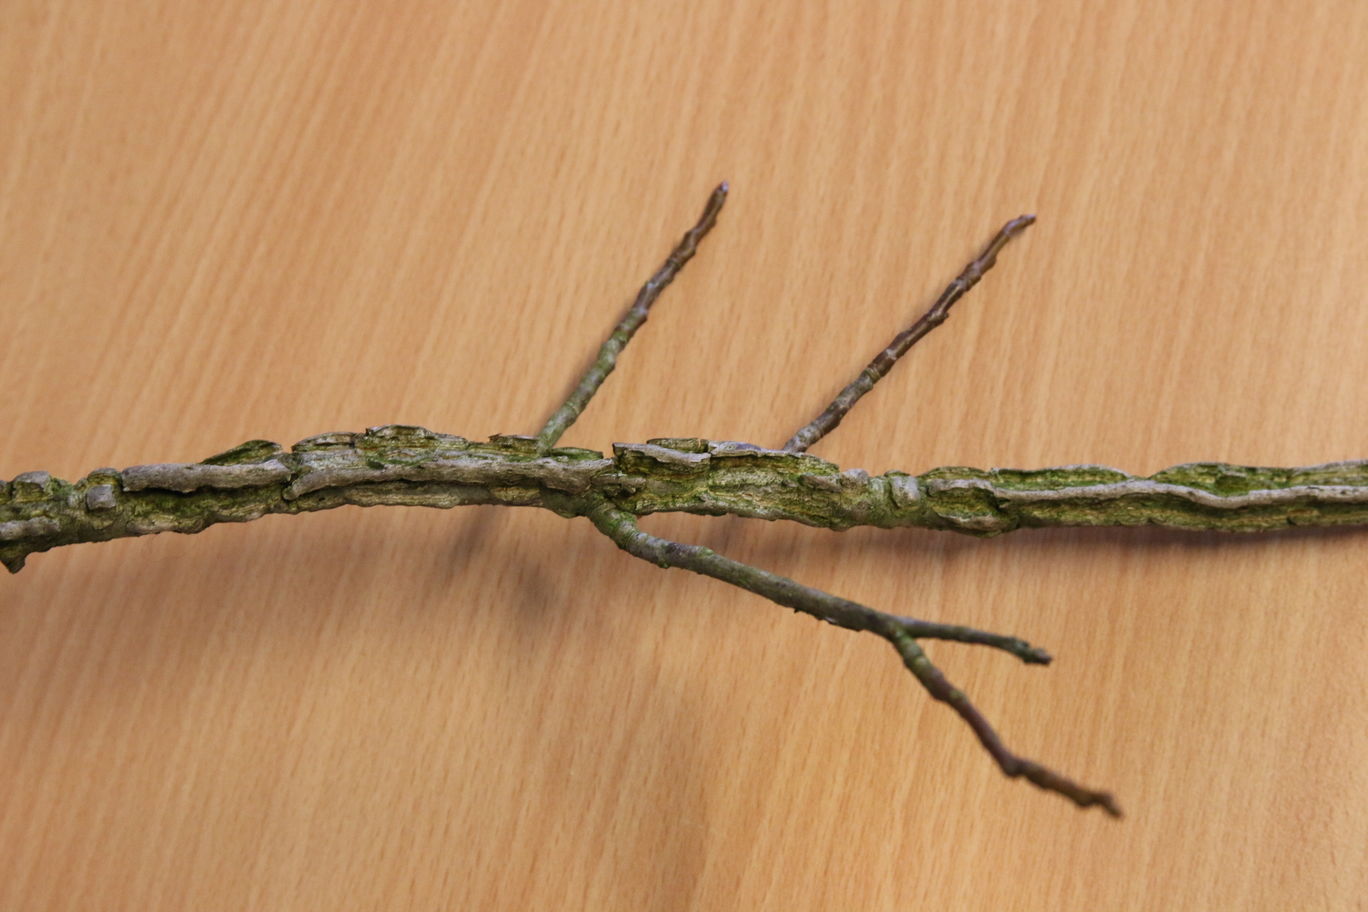 makkie: dikke kurklijsten zonder de tegenoverstaande knoppen zoals de Acer campestre, dus dit is de Liquidambar styraciflua, de amberboom